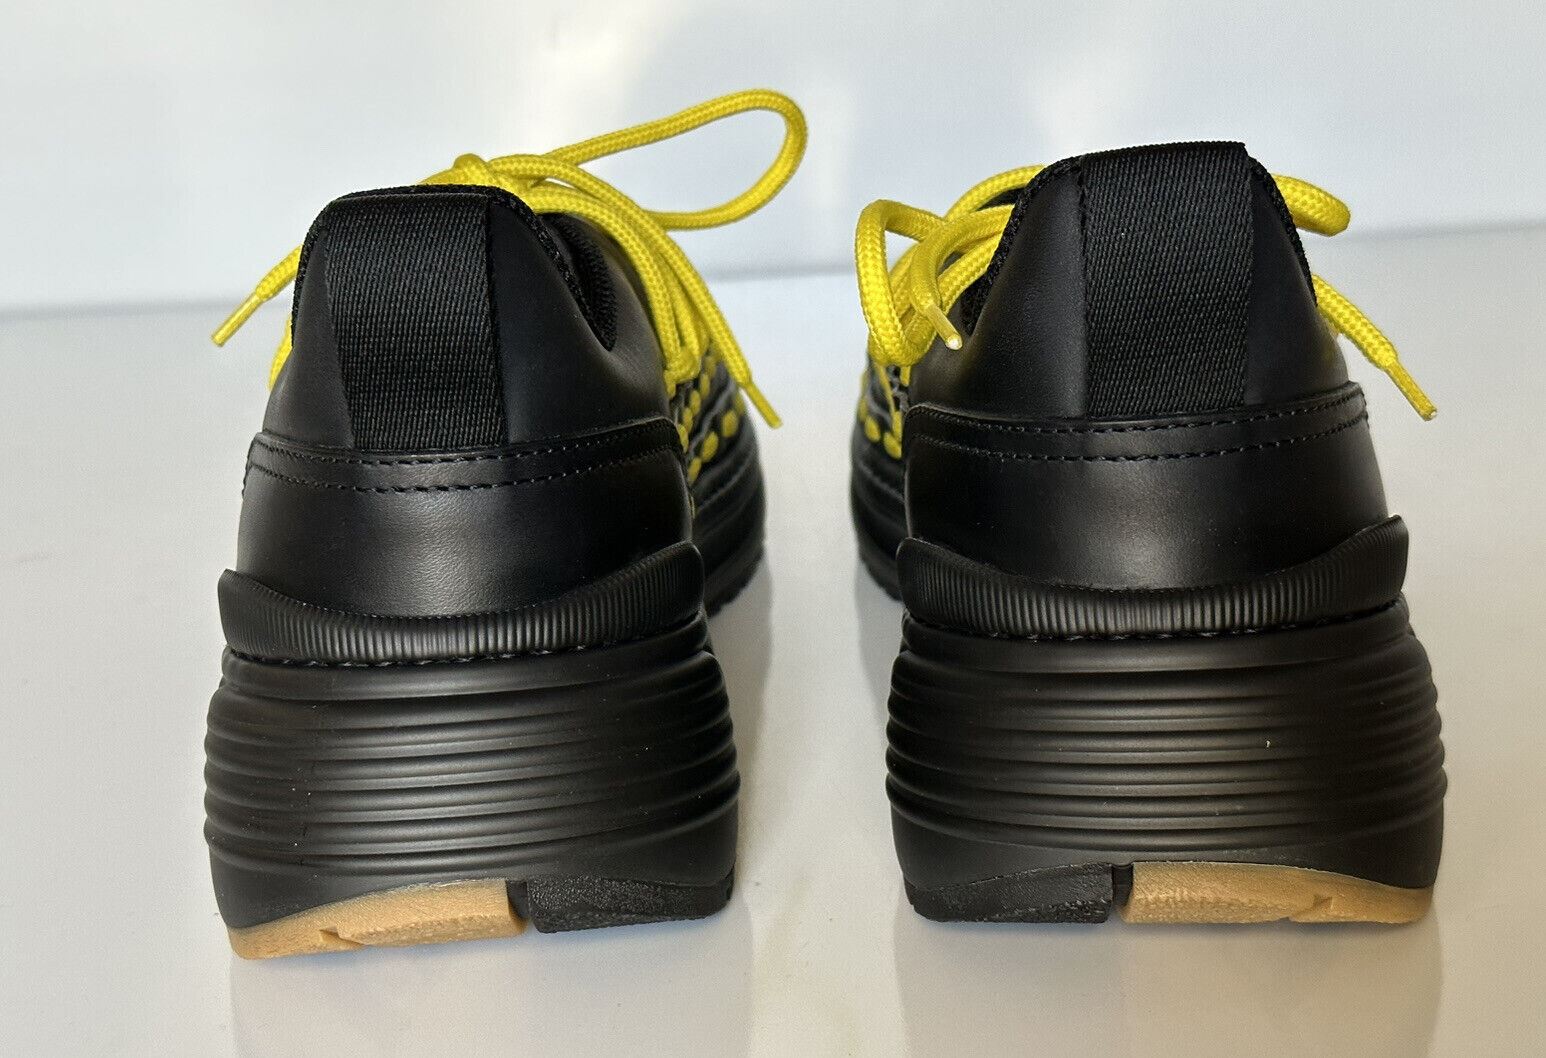 Мужские кожаные черные/желтые кроссовки Bottega Veneta за 950 долларов США 12 США 578305 1013 